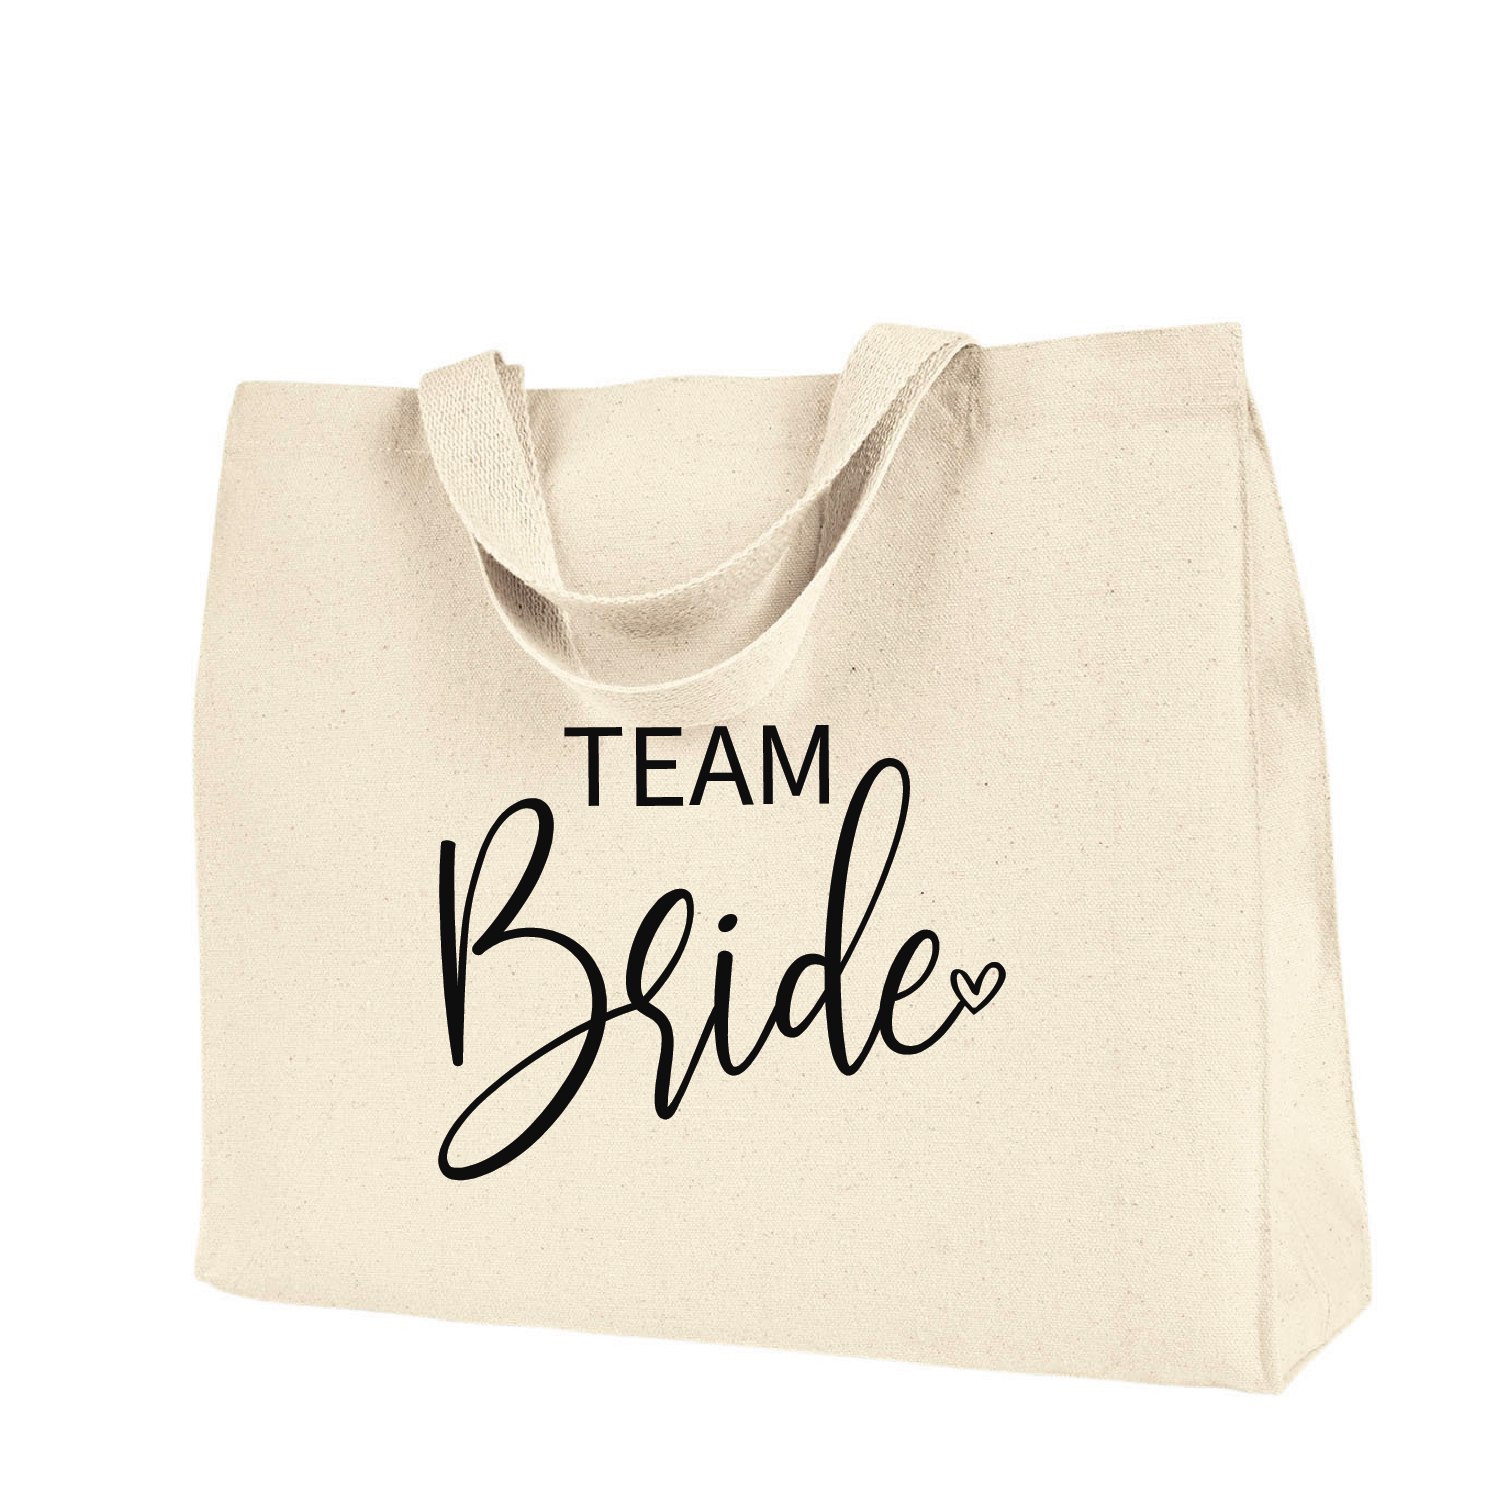 Pink Team Bride Canvas Tote Bag